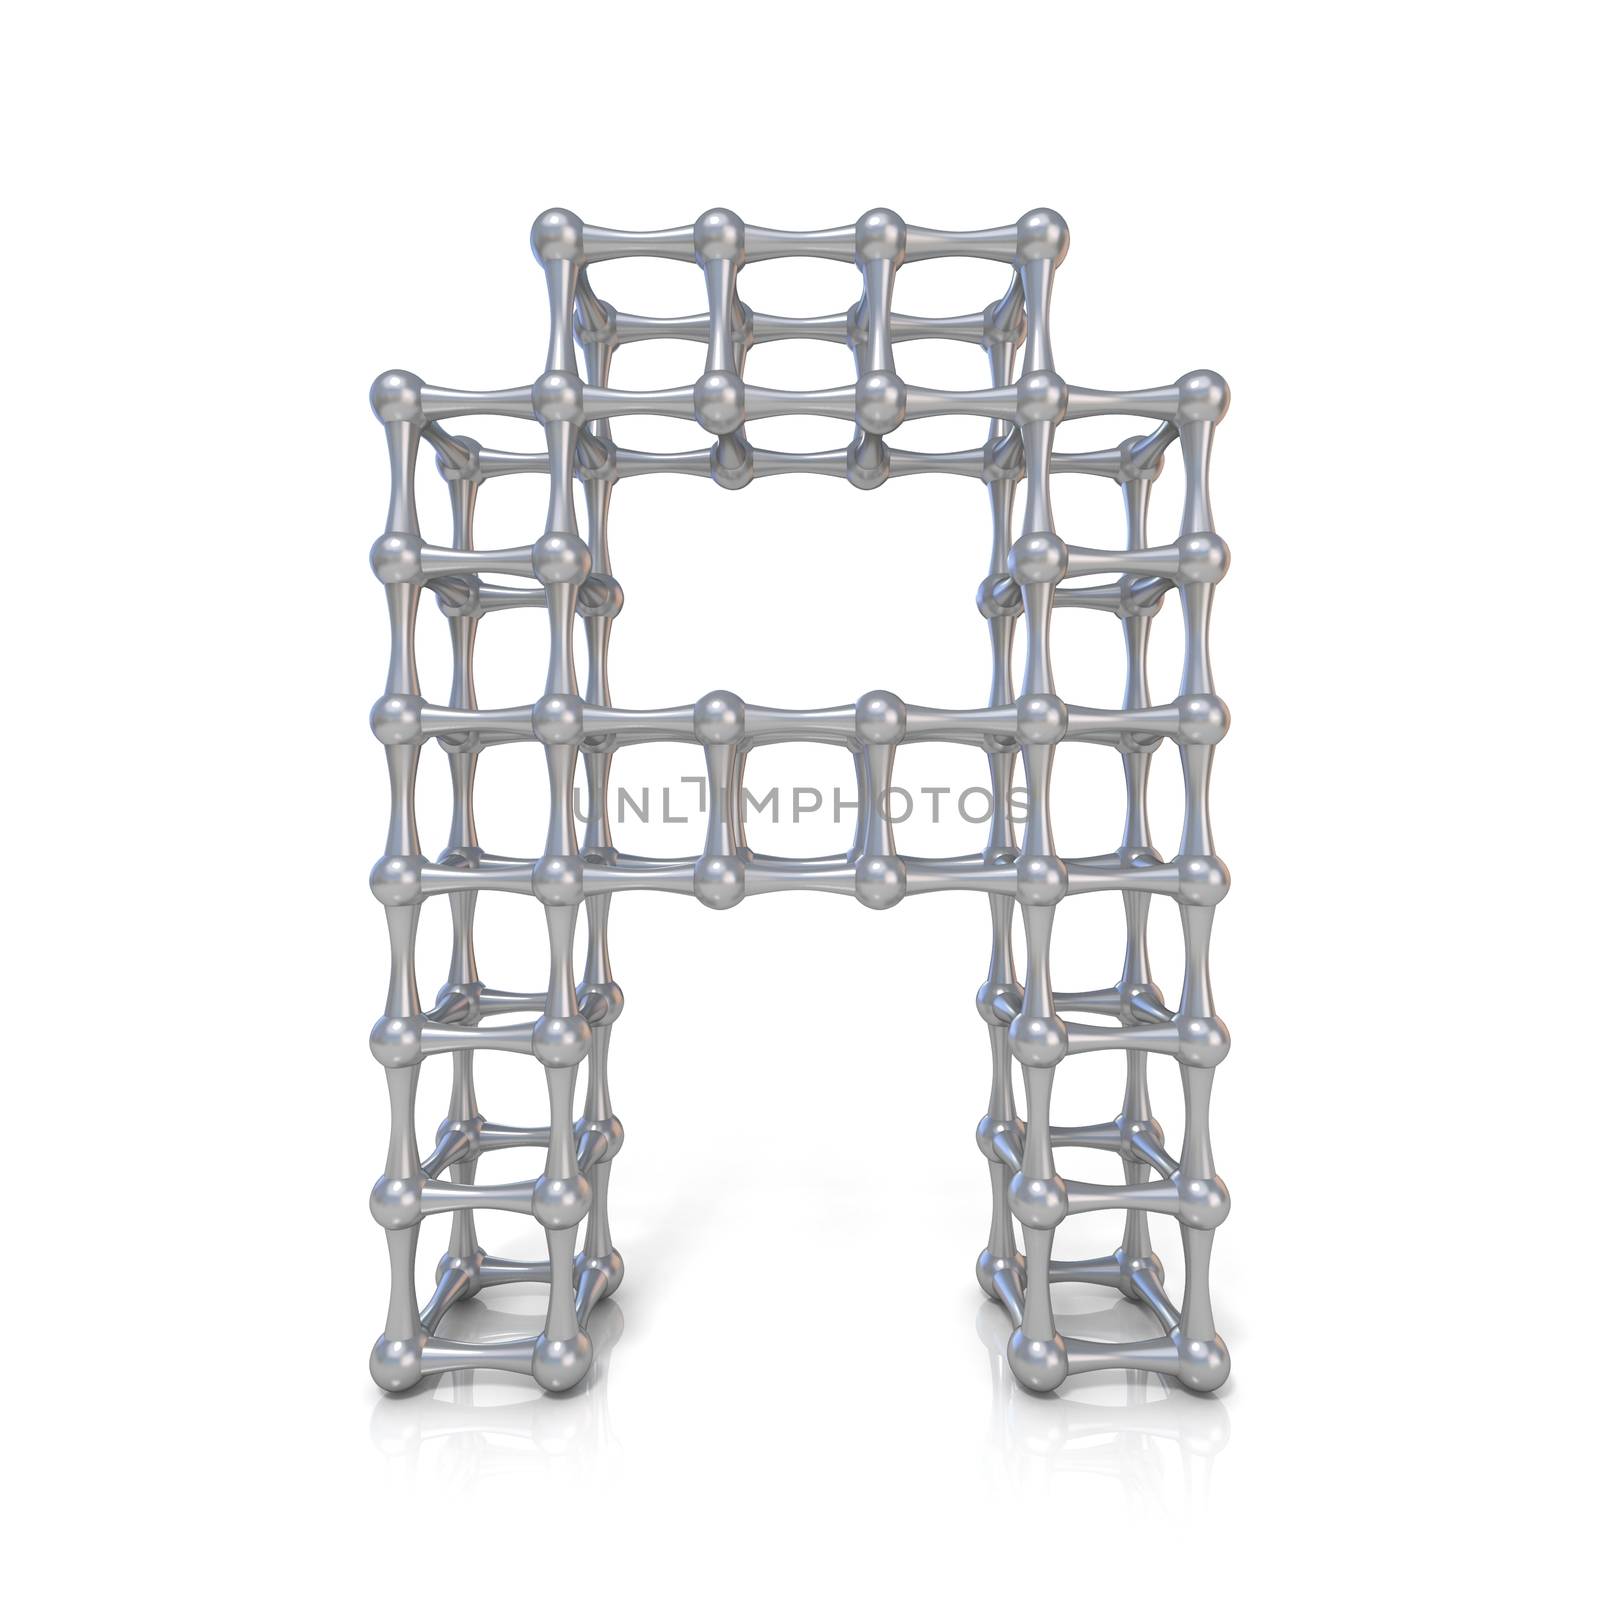 Metal lattice font letter A 3D by djmilic